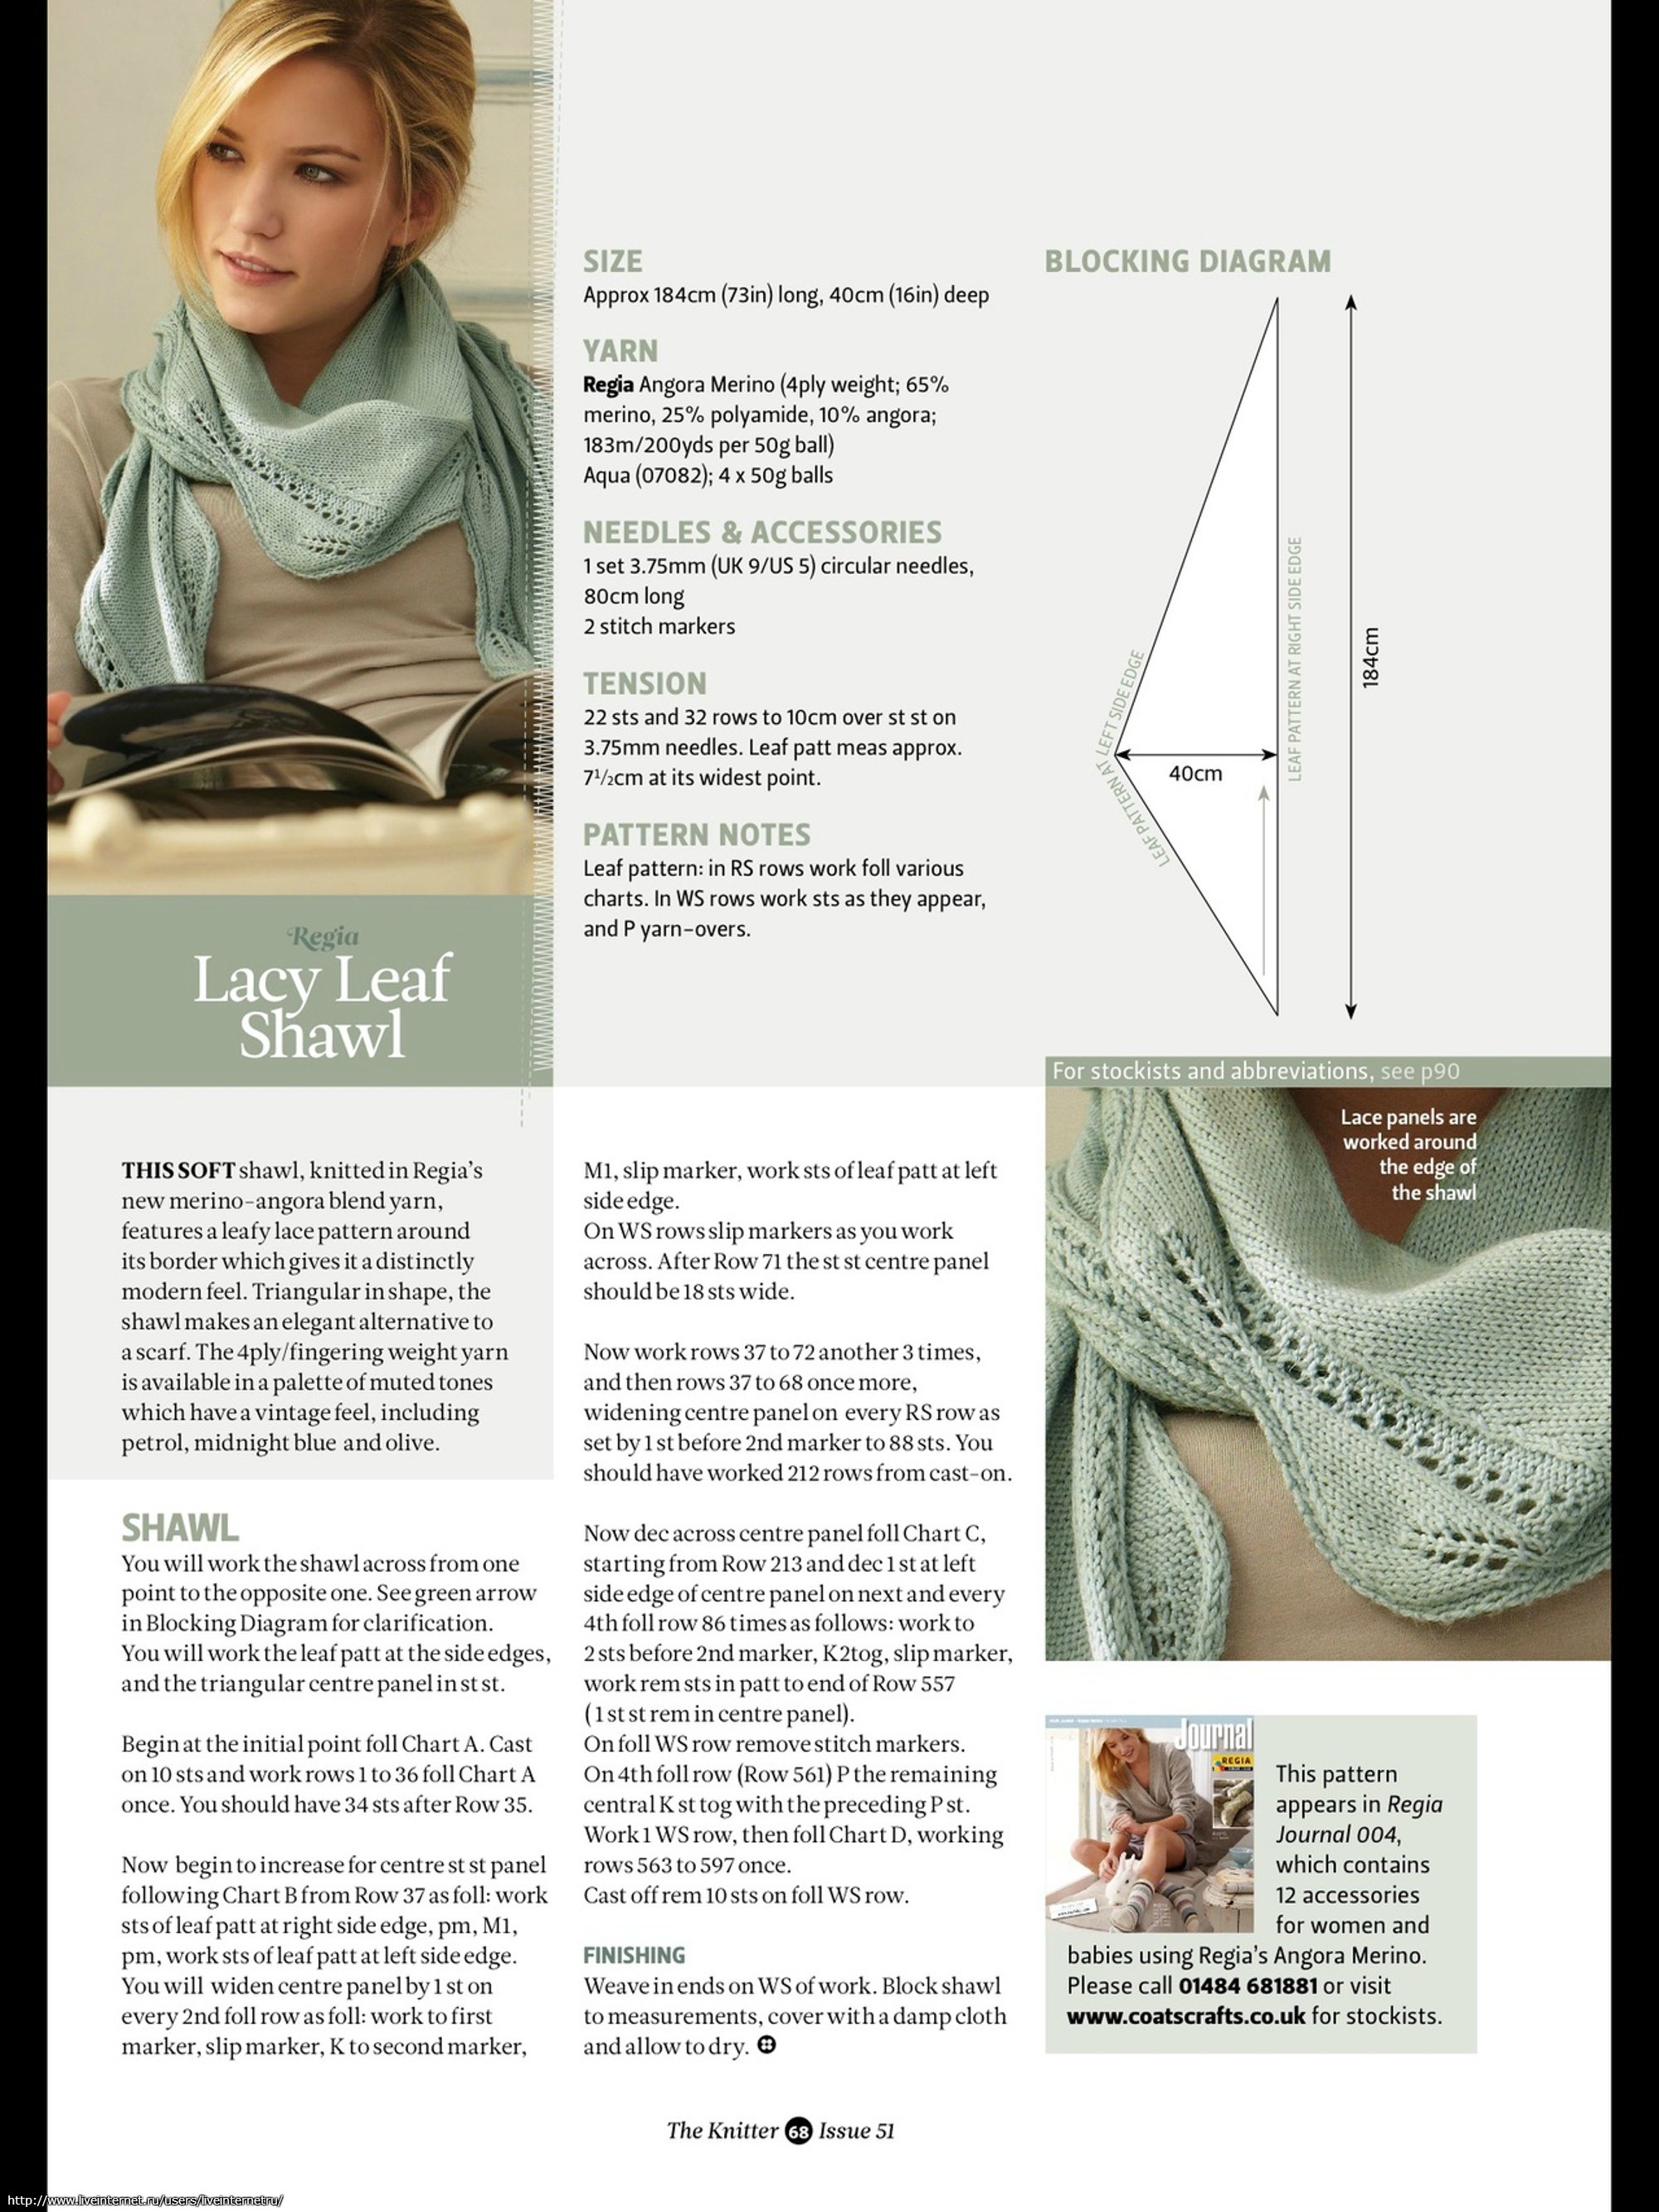 Вязание бактуса своими руками - инструкция, как вязать спицами, схемы, новые модели, примеры идеальной вязки